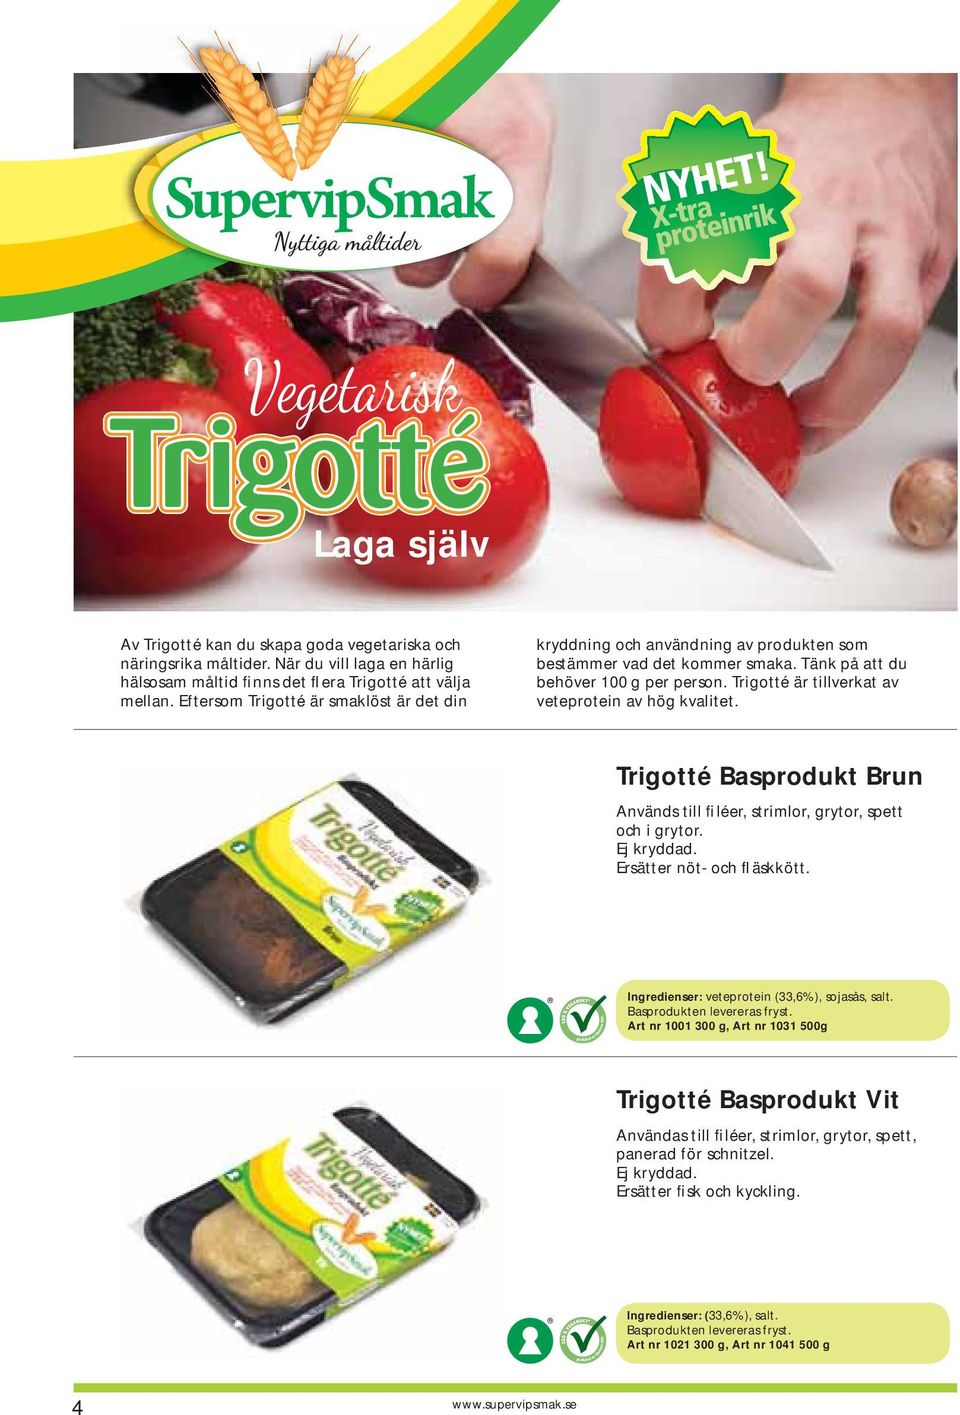 Trigotté är tillverkat av veteprotein av hög kvalitet. Trigotté Basprodukt Brun Används till filéer, strimlor, grytor, spett och i grytor. Ersätter nöt- och fläskkött.